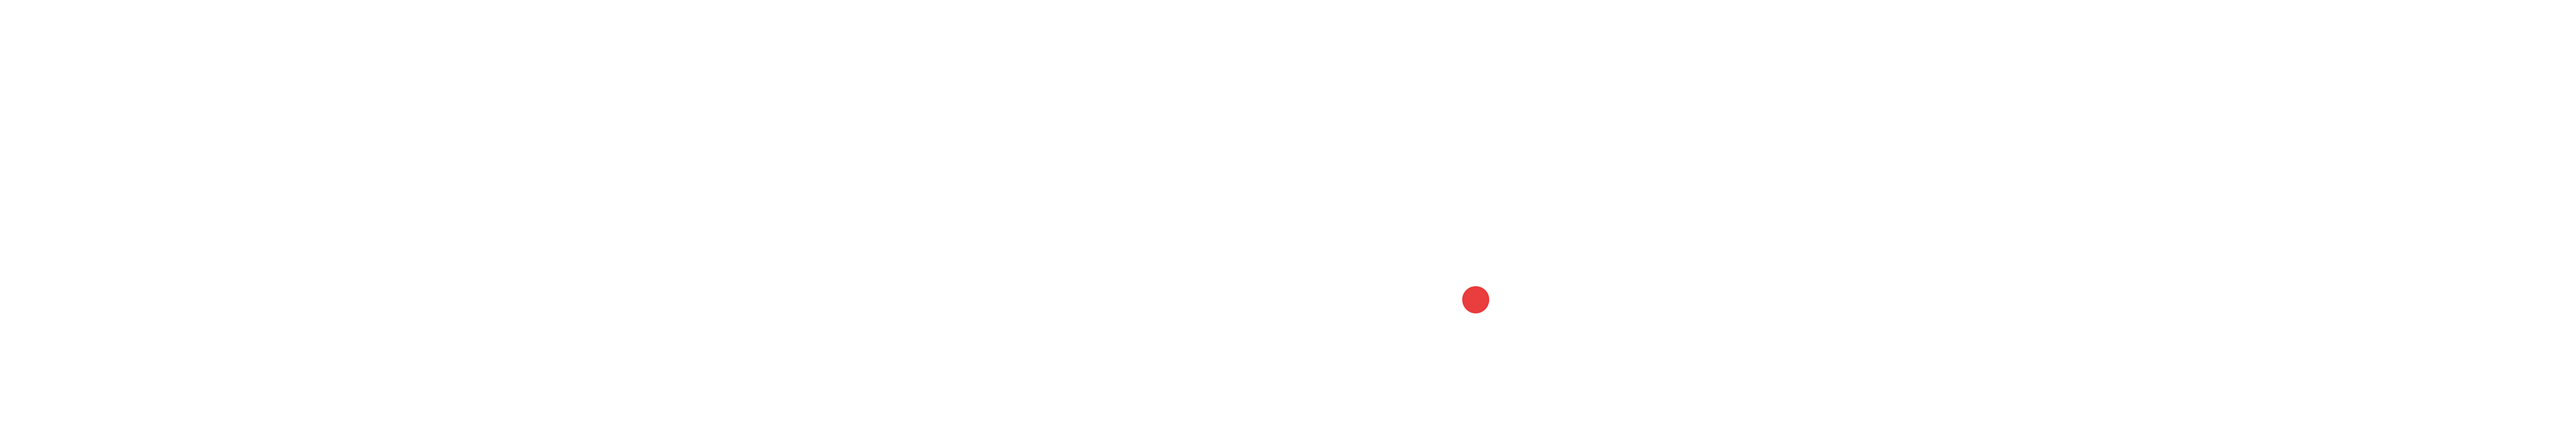 Aaron J. Washington Logo